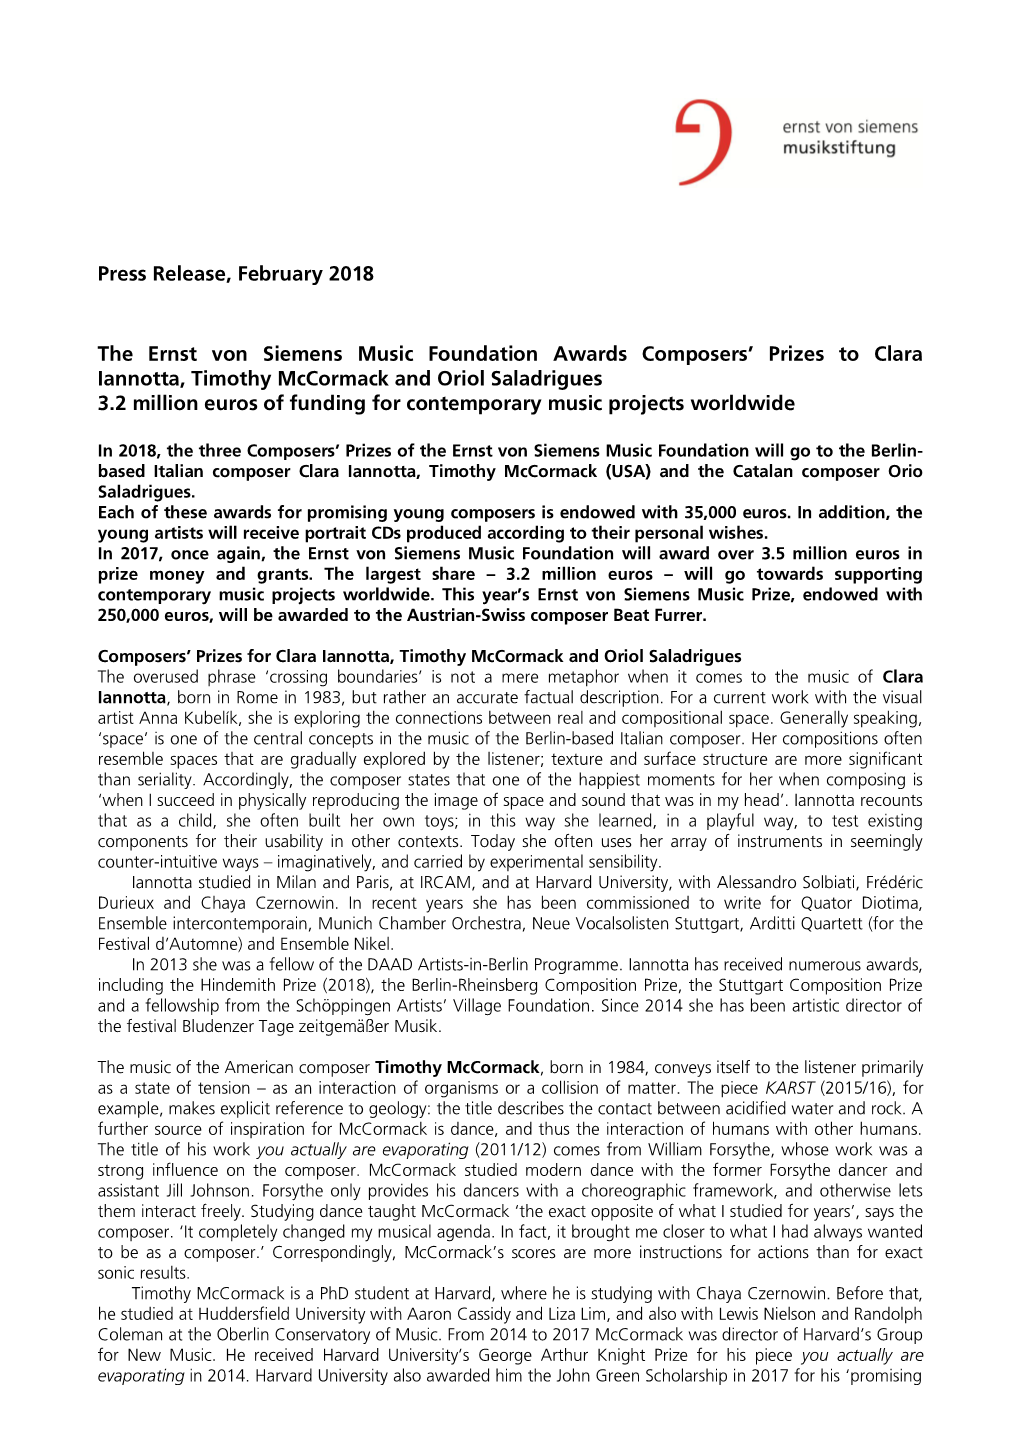 Press Release, February 2018 the Ernst Von Siemens Music